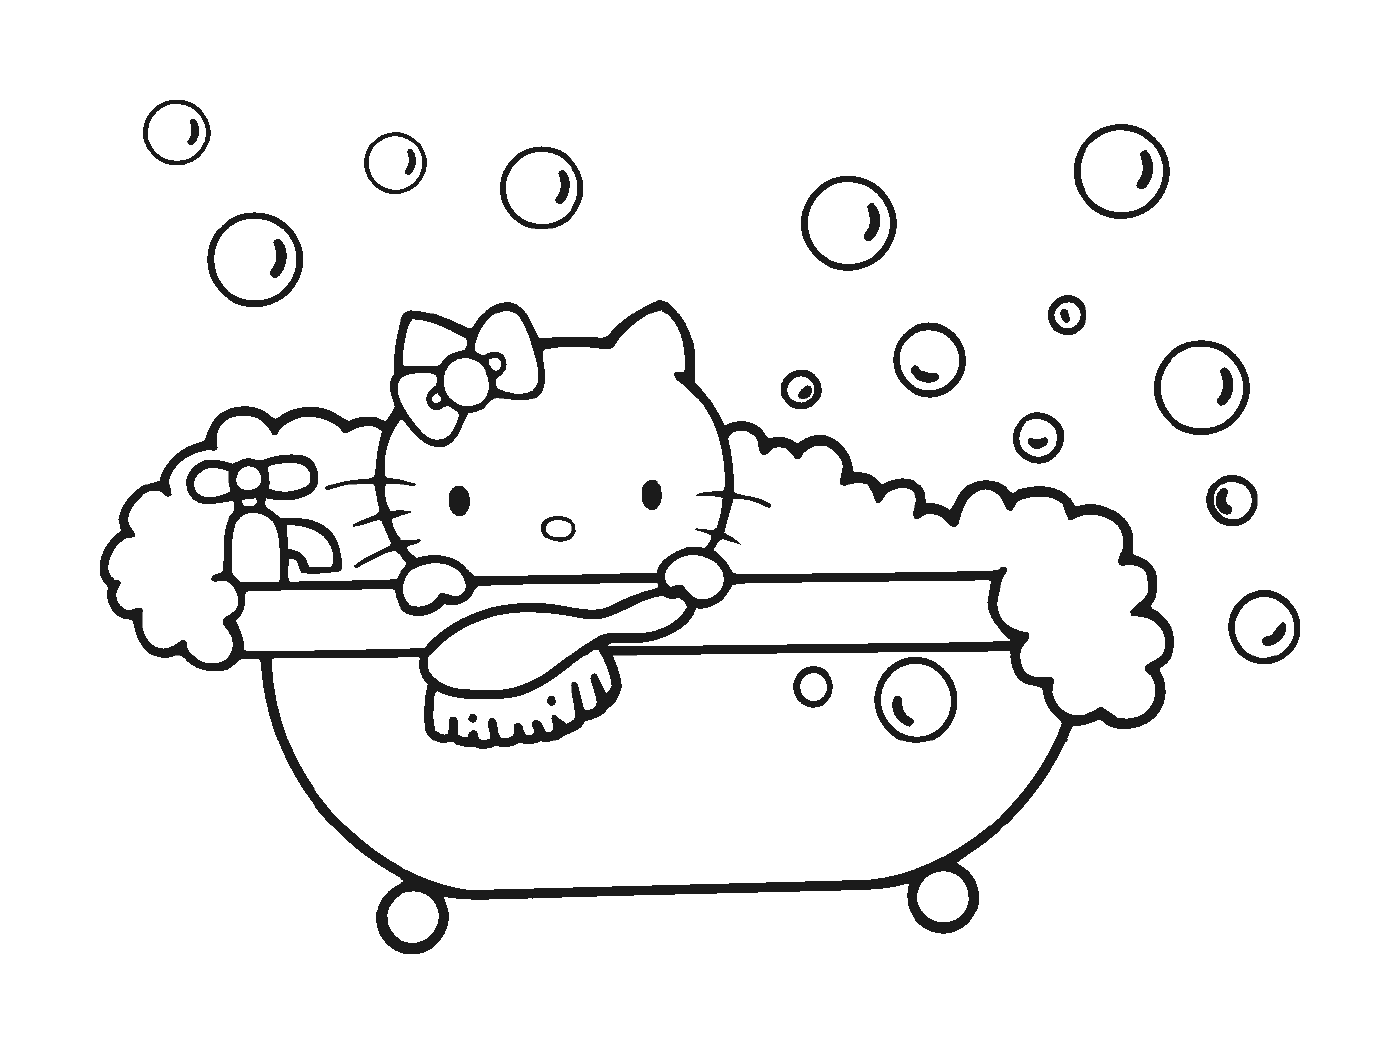  Hola Kitty rodeada de burbujas 